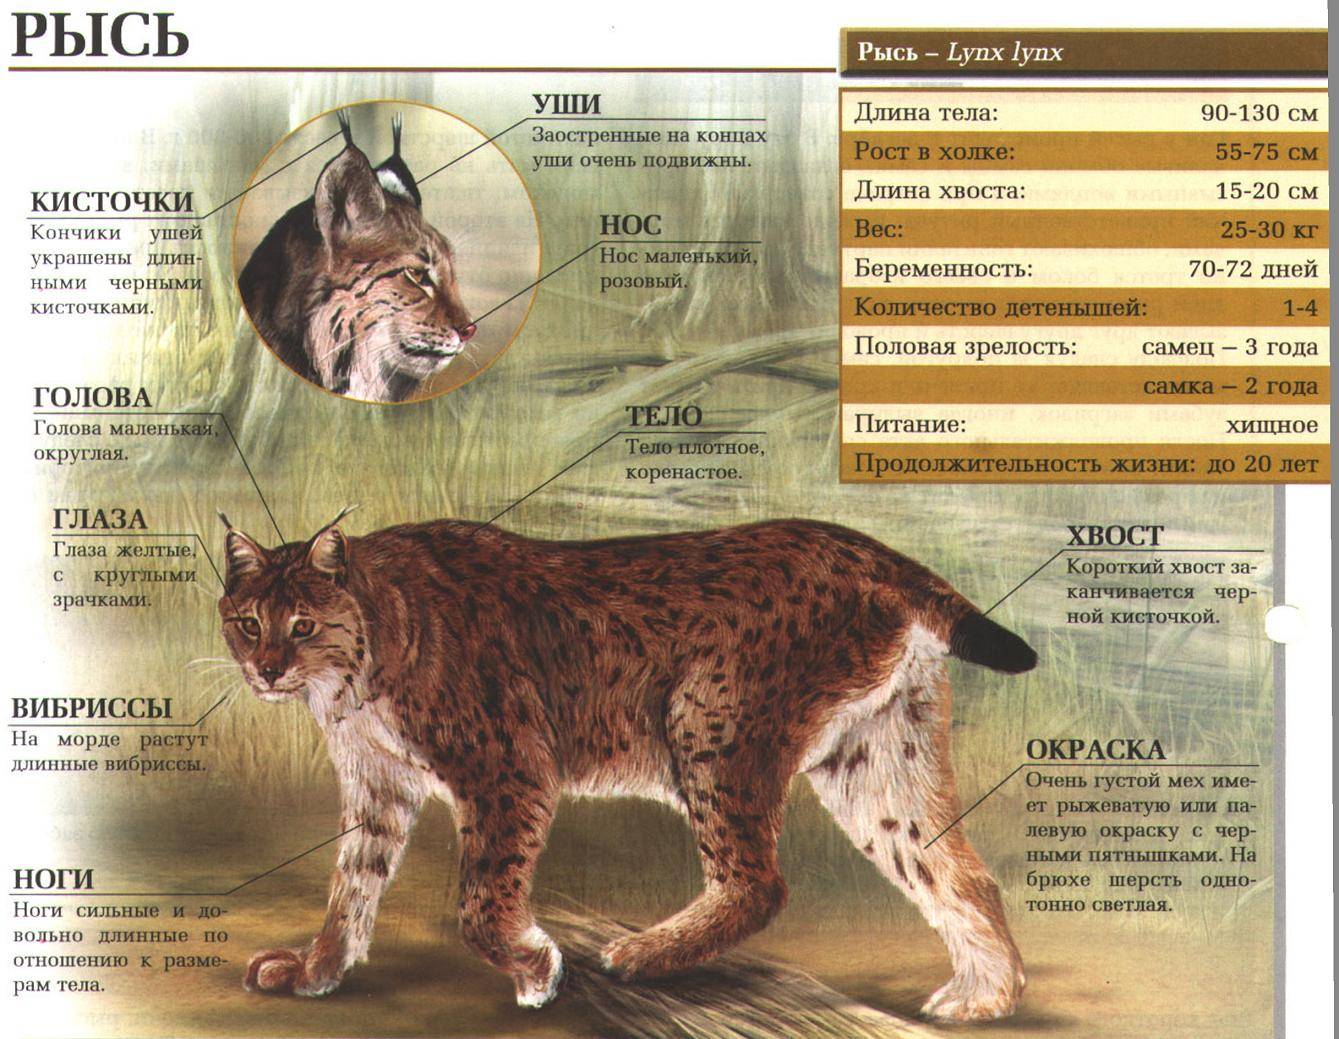 Лесной кот: образ жизни и описание дикого животного, характер и повадки, размножение и содержание в неволе